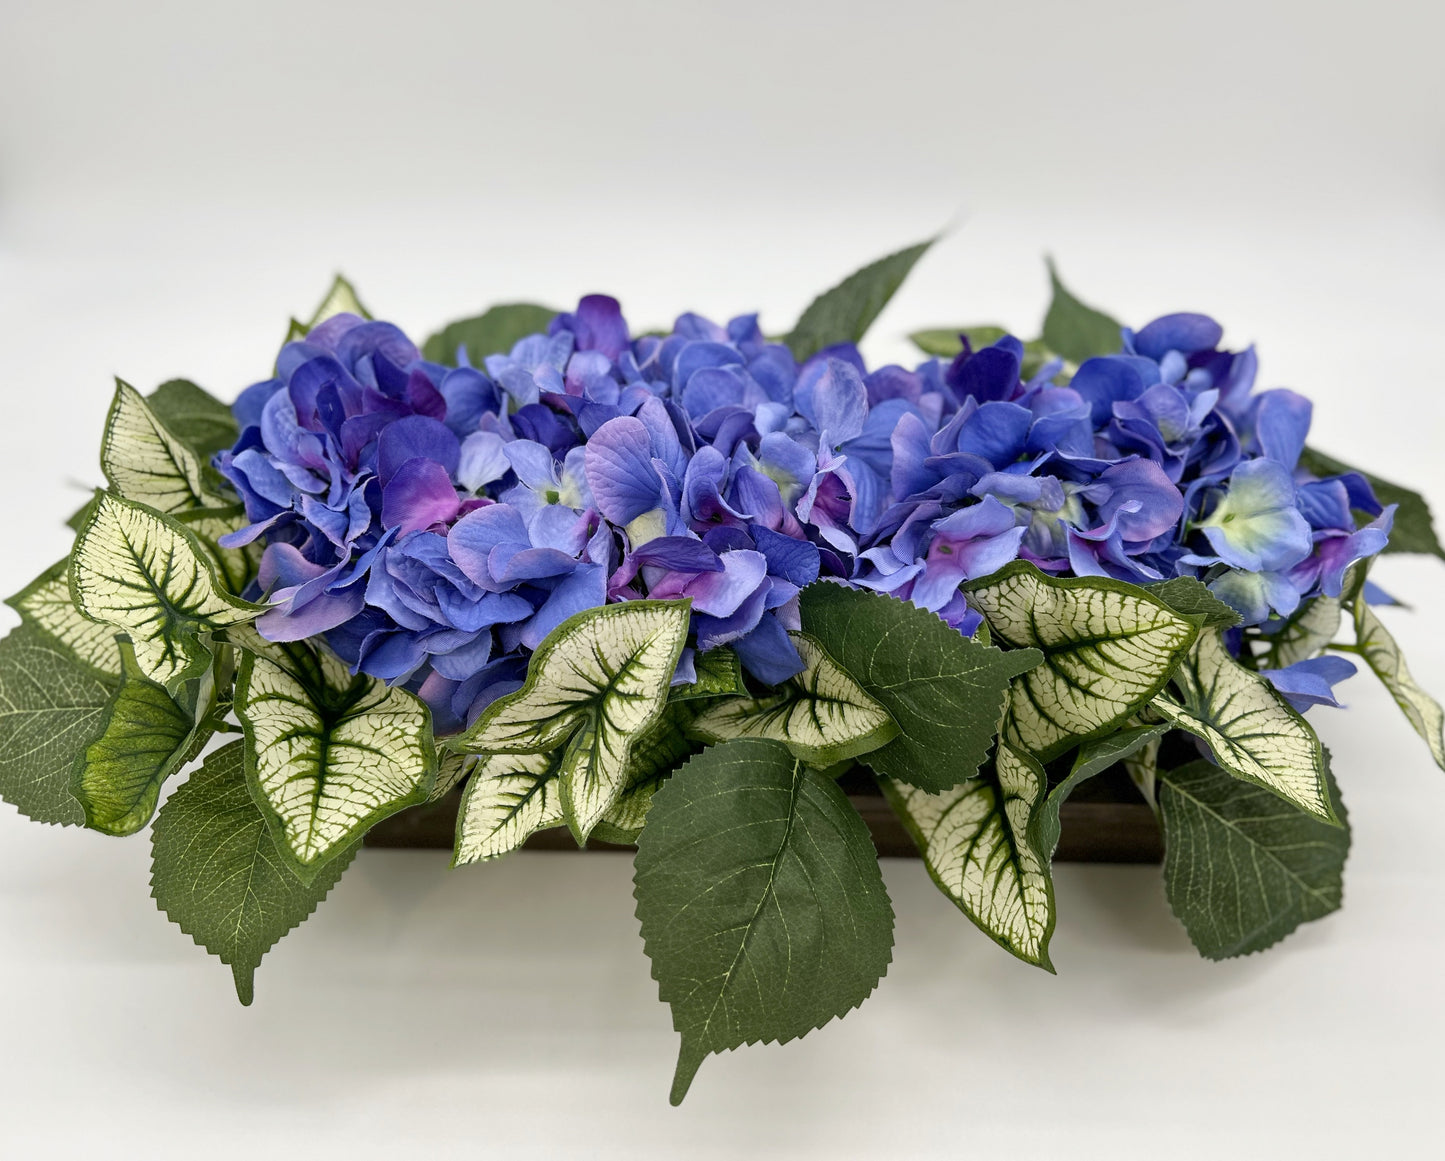 Lifelike Beauty in a Box: Blue Hydrangeas Leaves